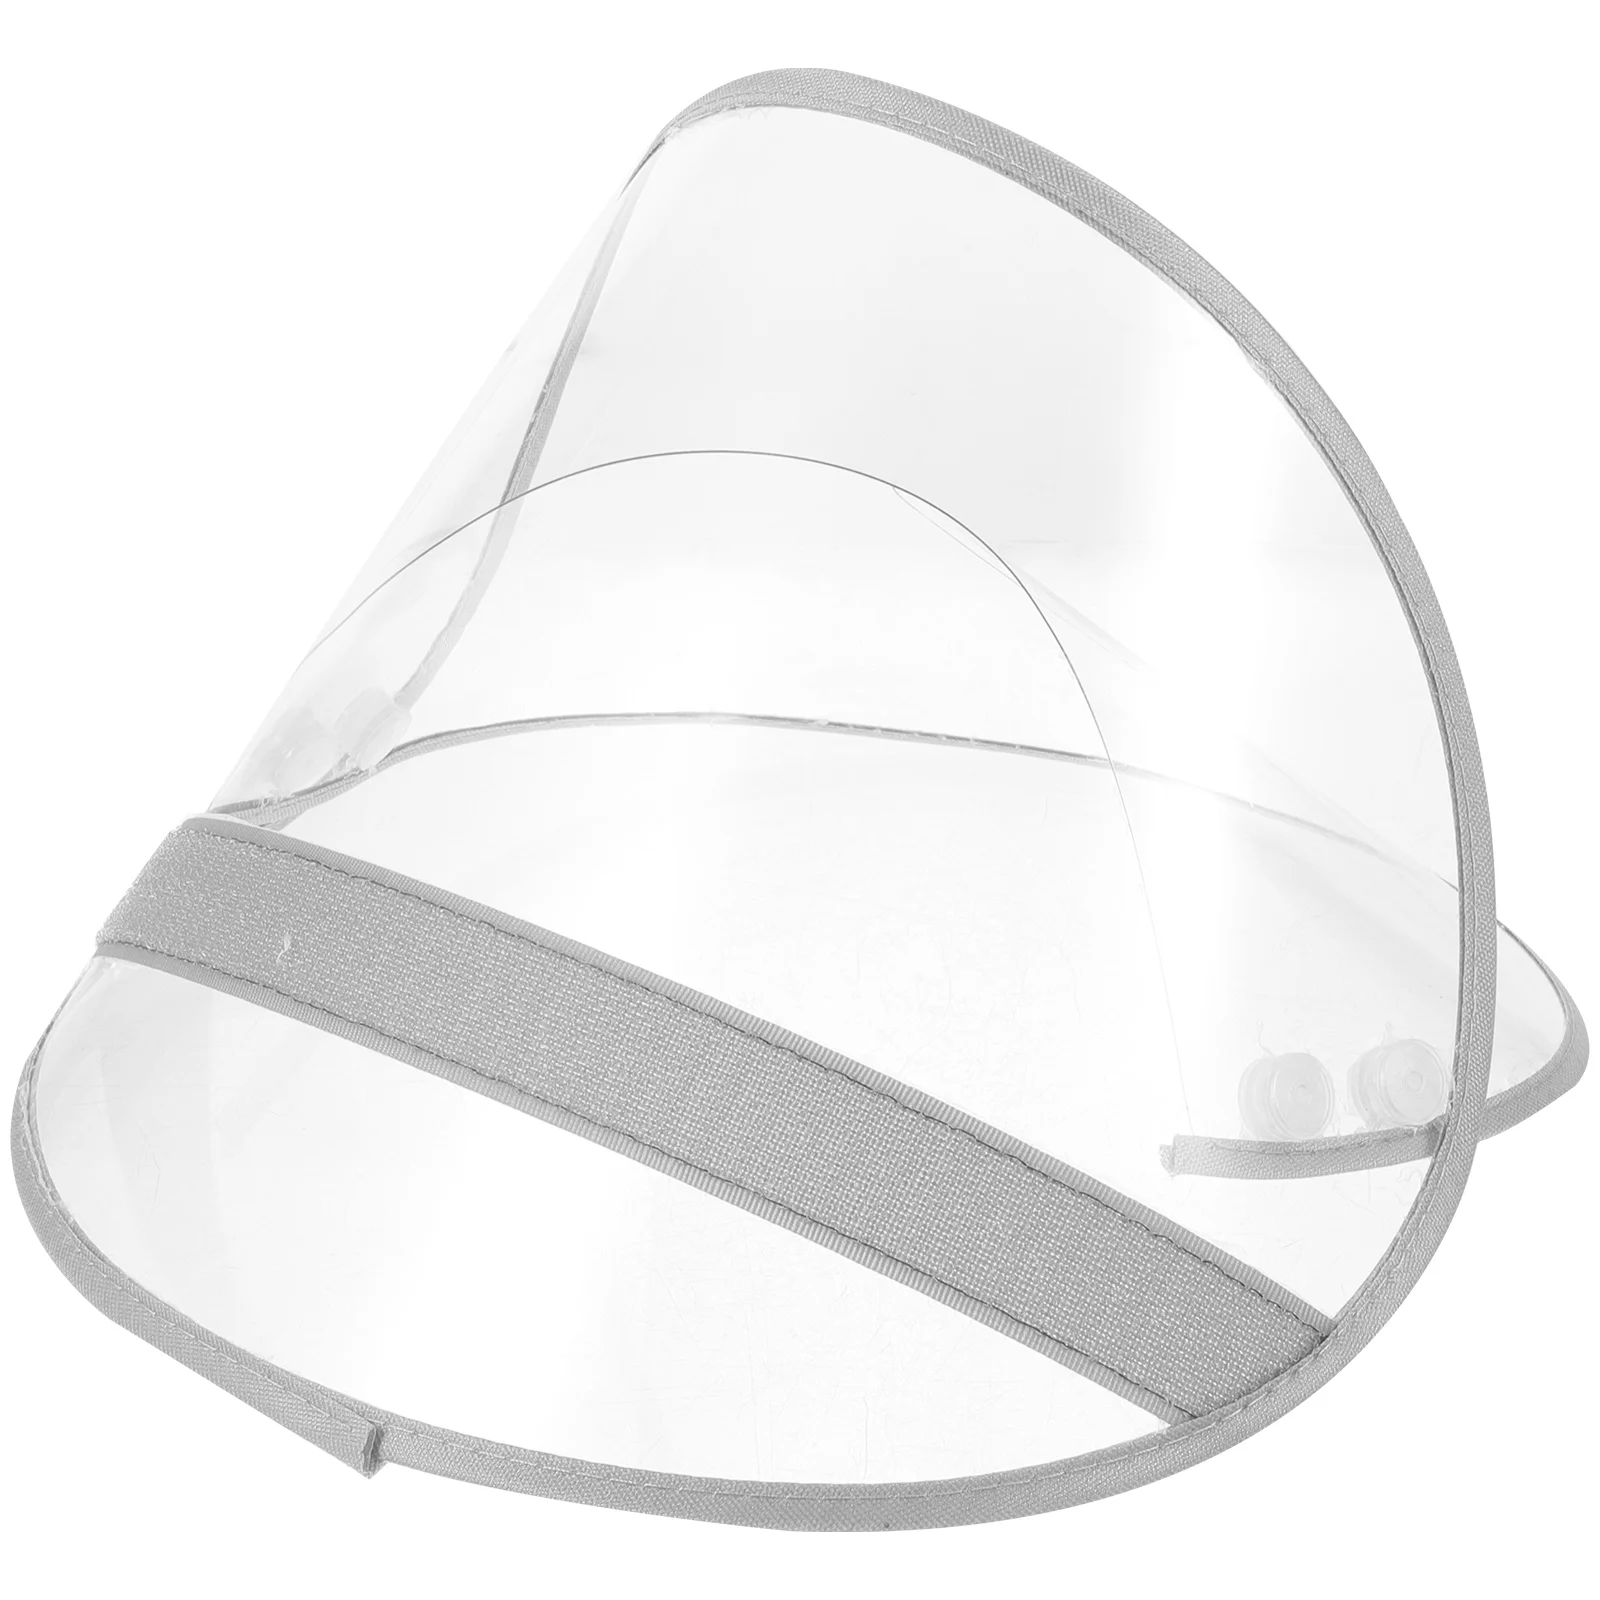 

Rain Protection Brim Raincoat Bonnet Hat Supply Transparent Cap Shield Face Protector